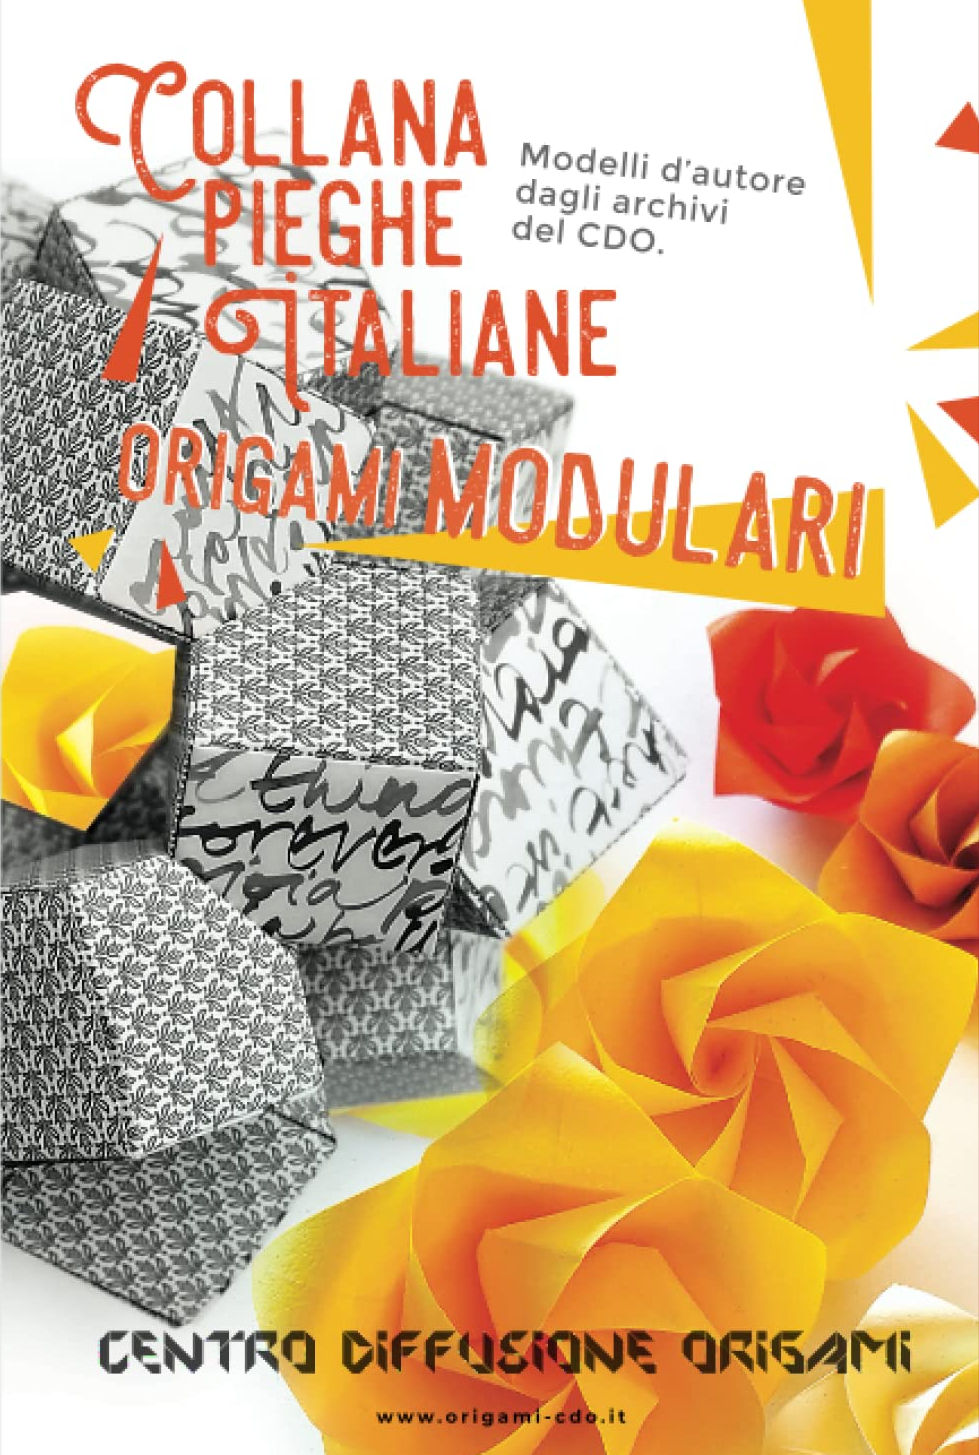 Collana pieghe Italiane - origami MODULARI : page 38.